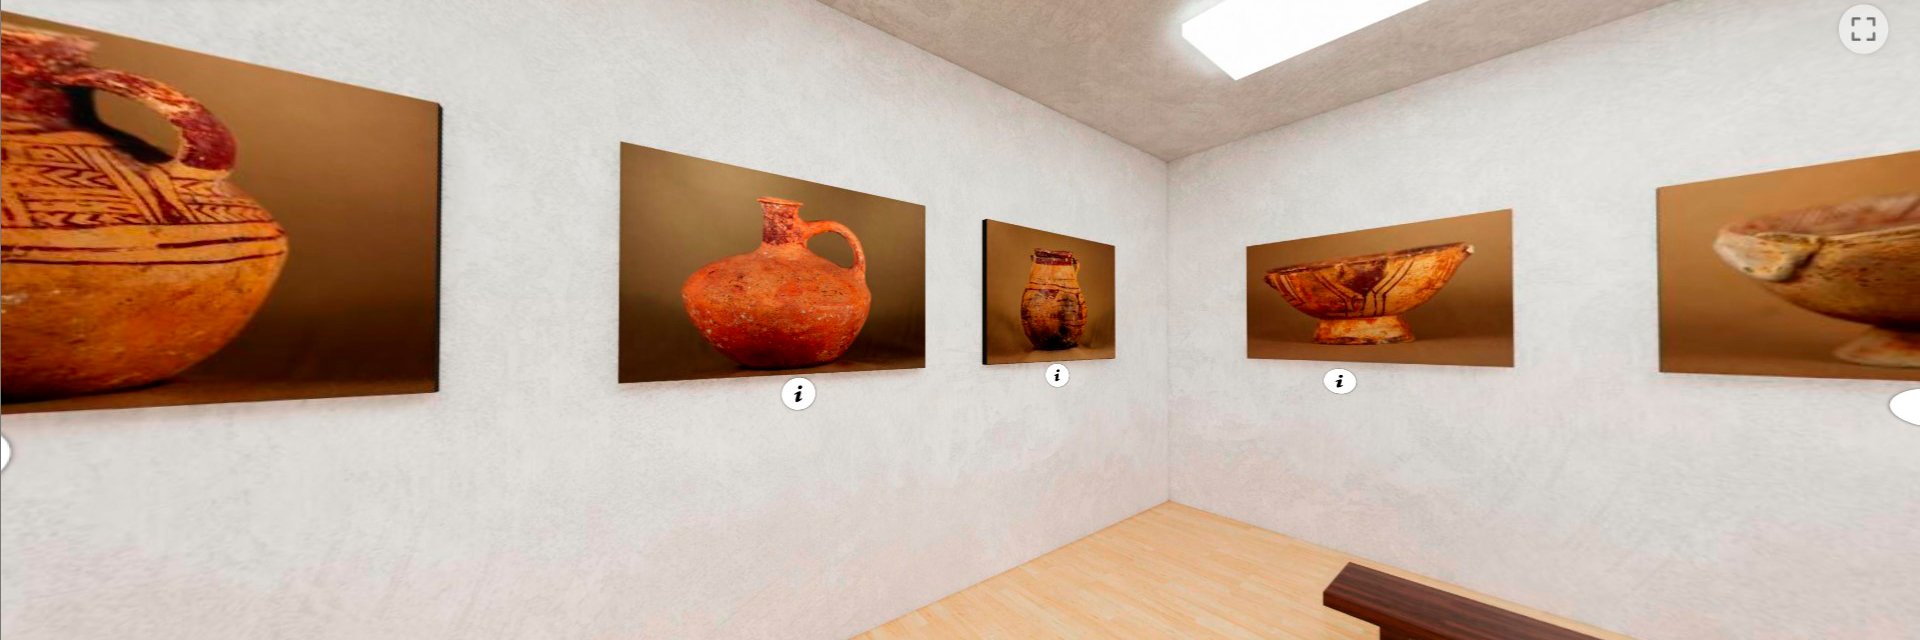 Nuevo Museo Virtual e Interactivo UDES permite apreciar piezas arqueológicas, esculturas y muestras artísticas